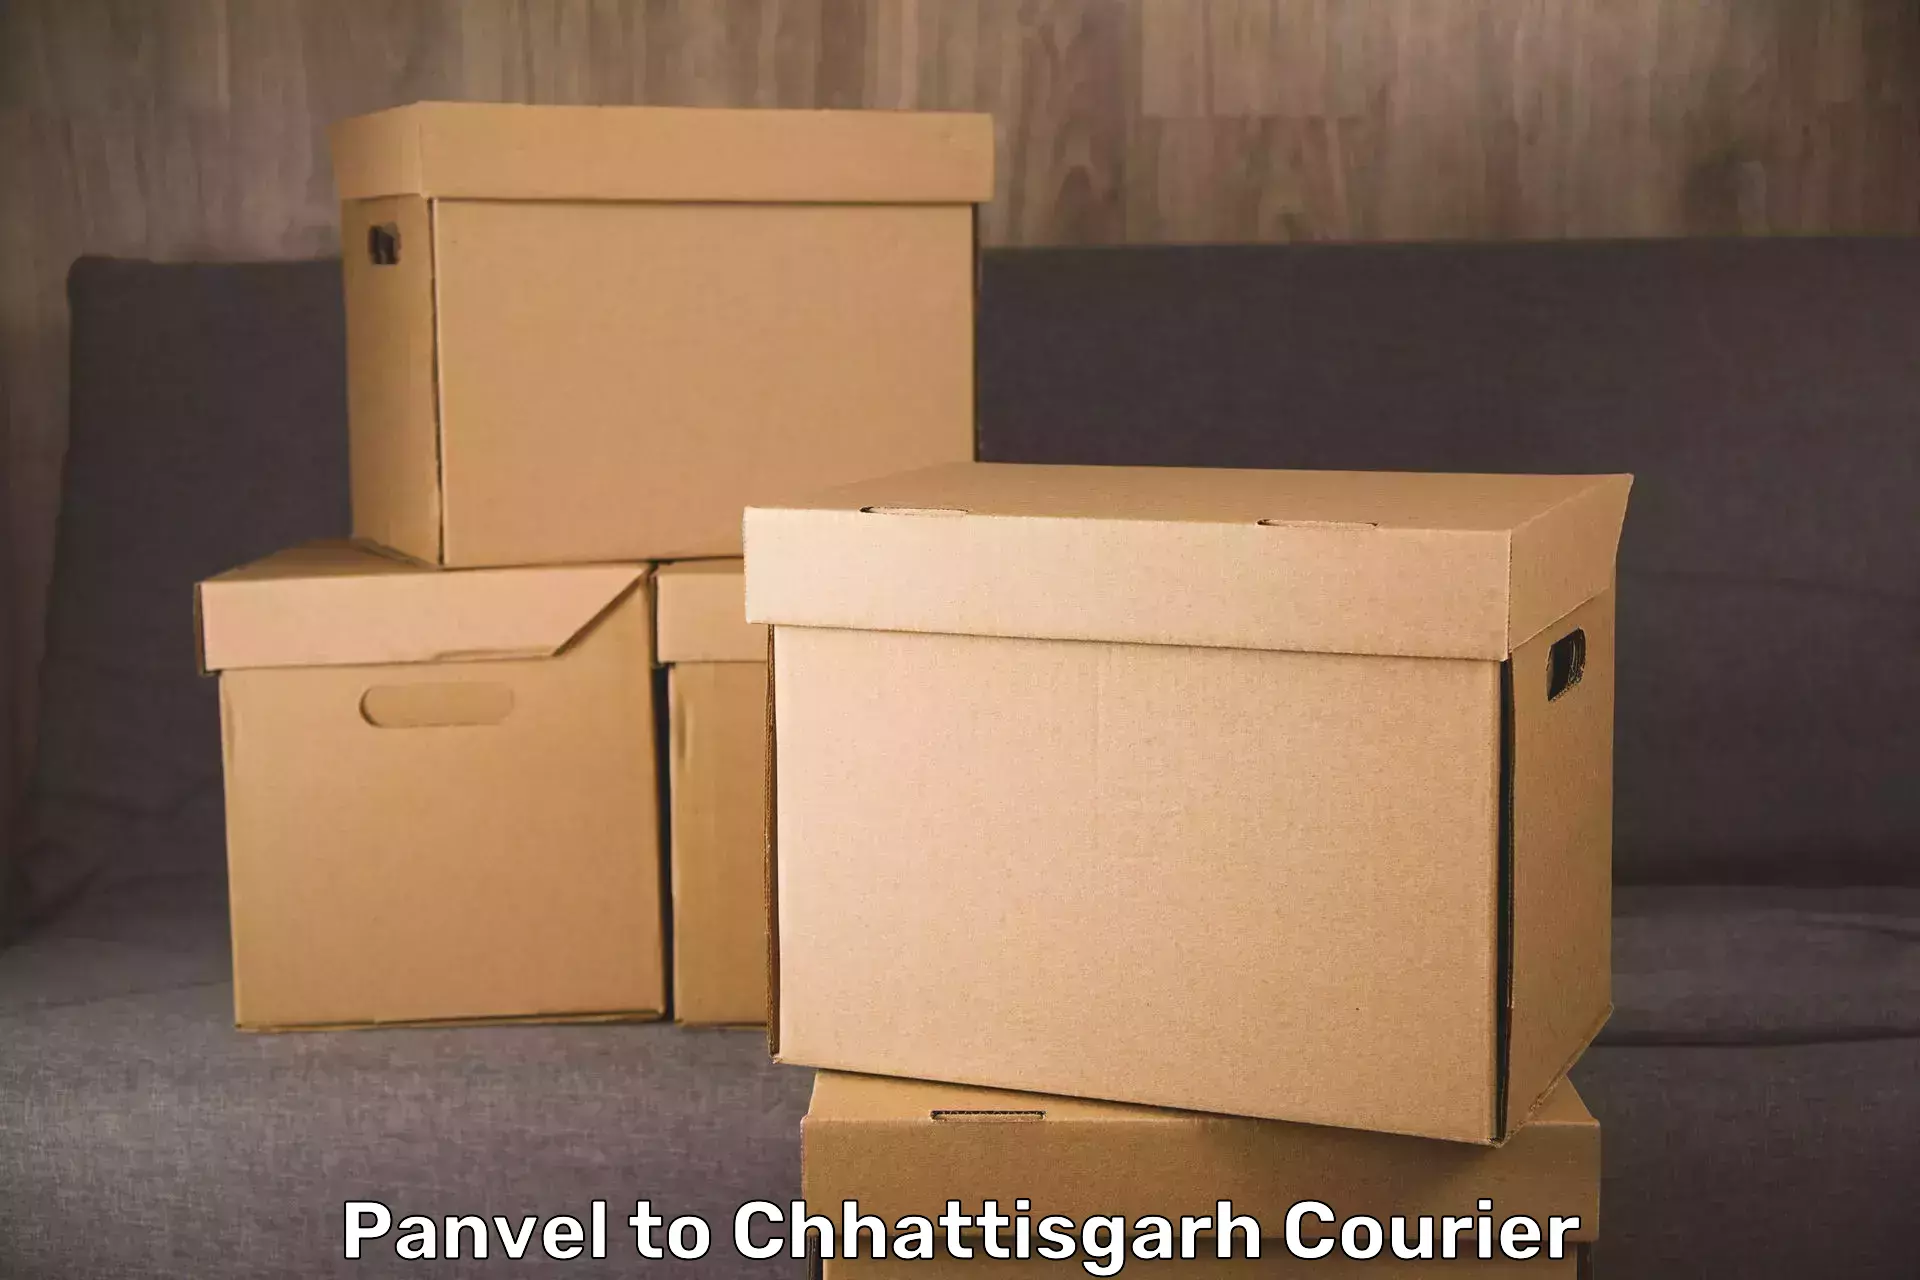 Baggage transport scheduler Panvel to Patna Chhattisgarh